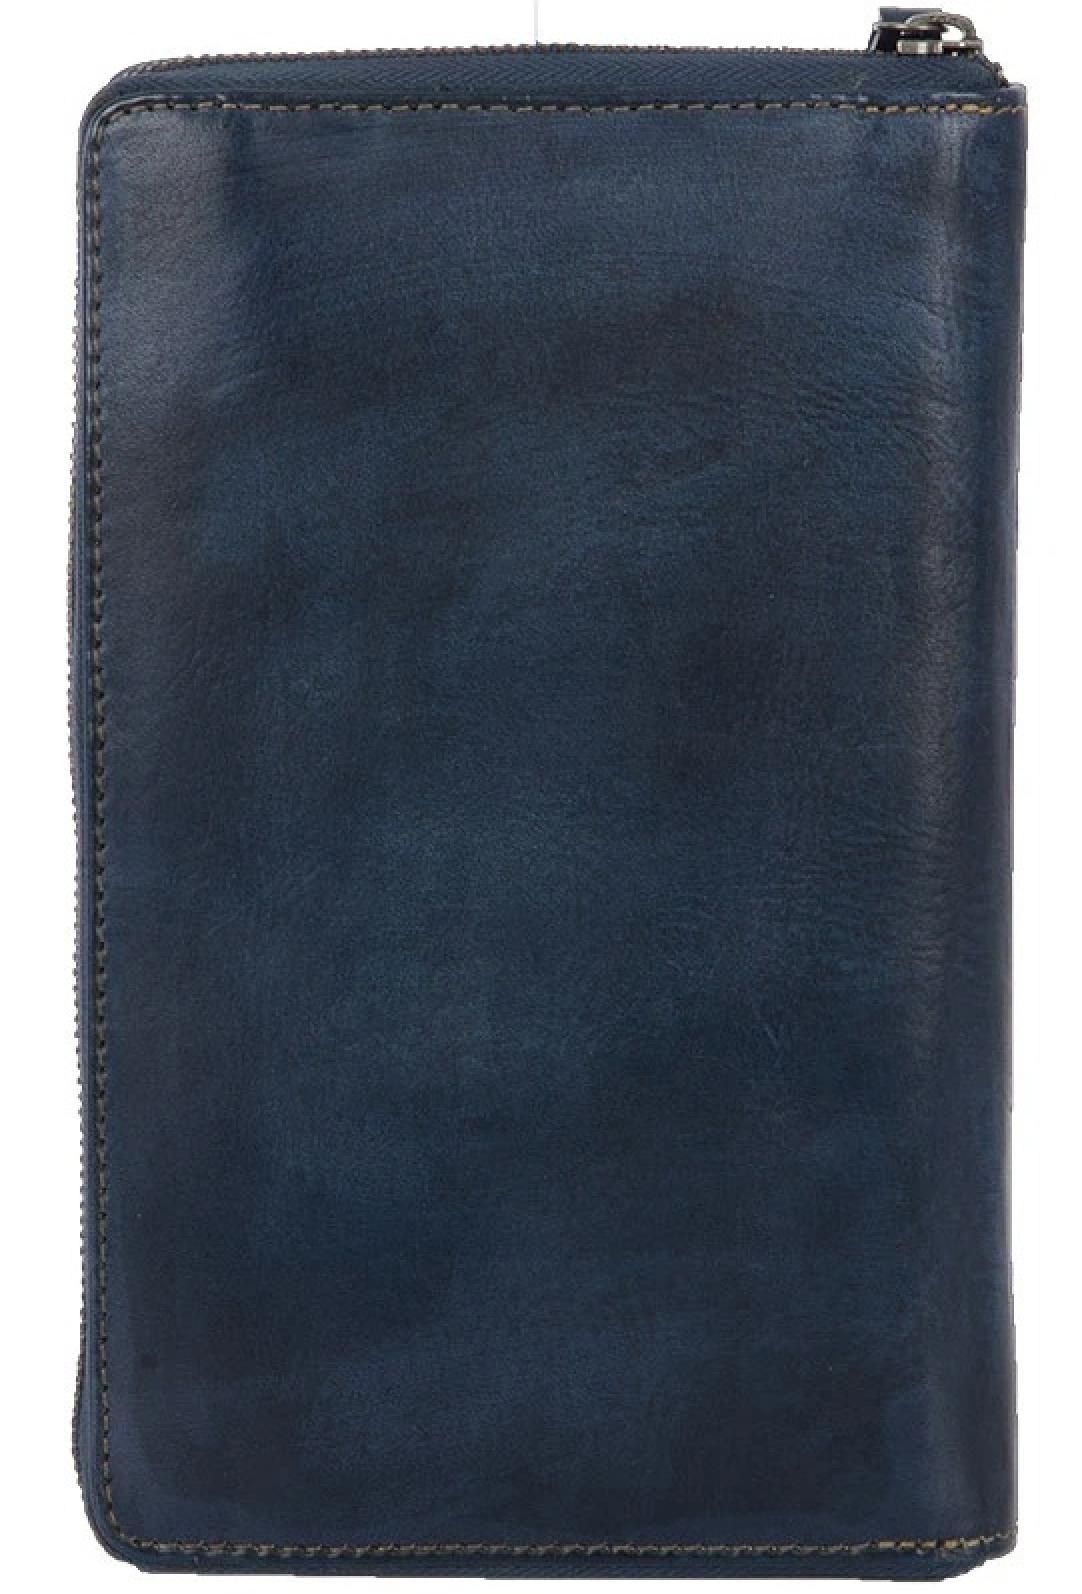 STS Ranchwear Denim Leather B.A. Wallet 